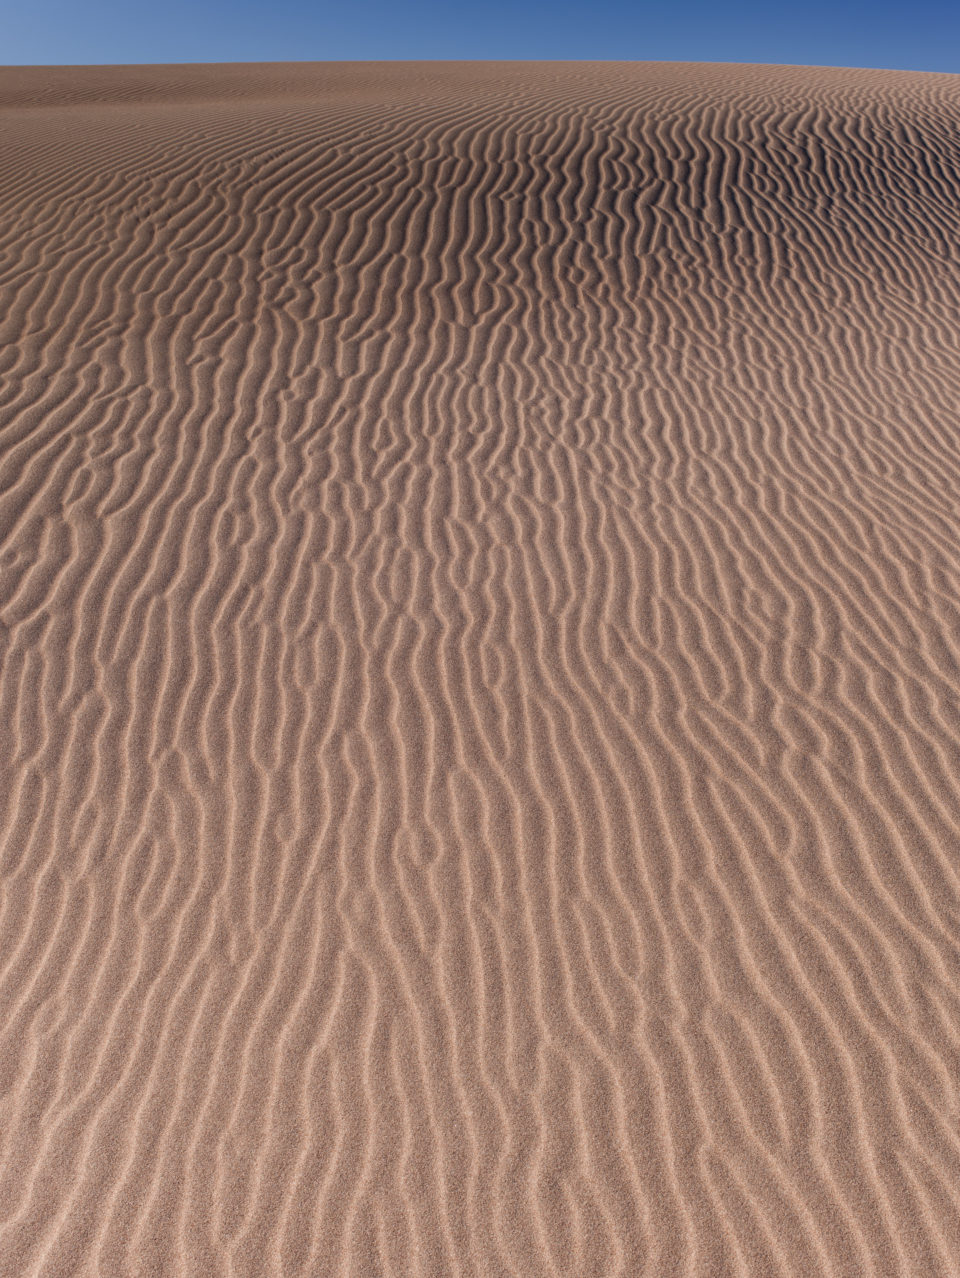 Pattern On Sand Dune